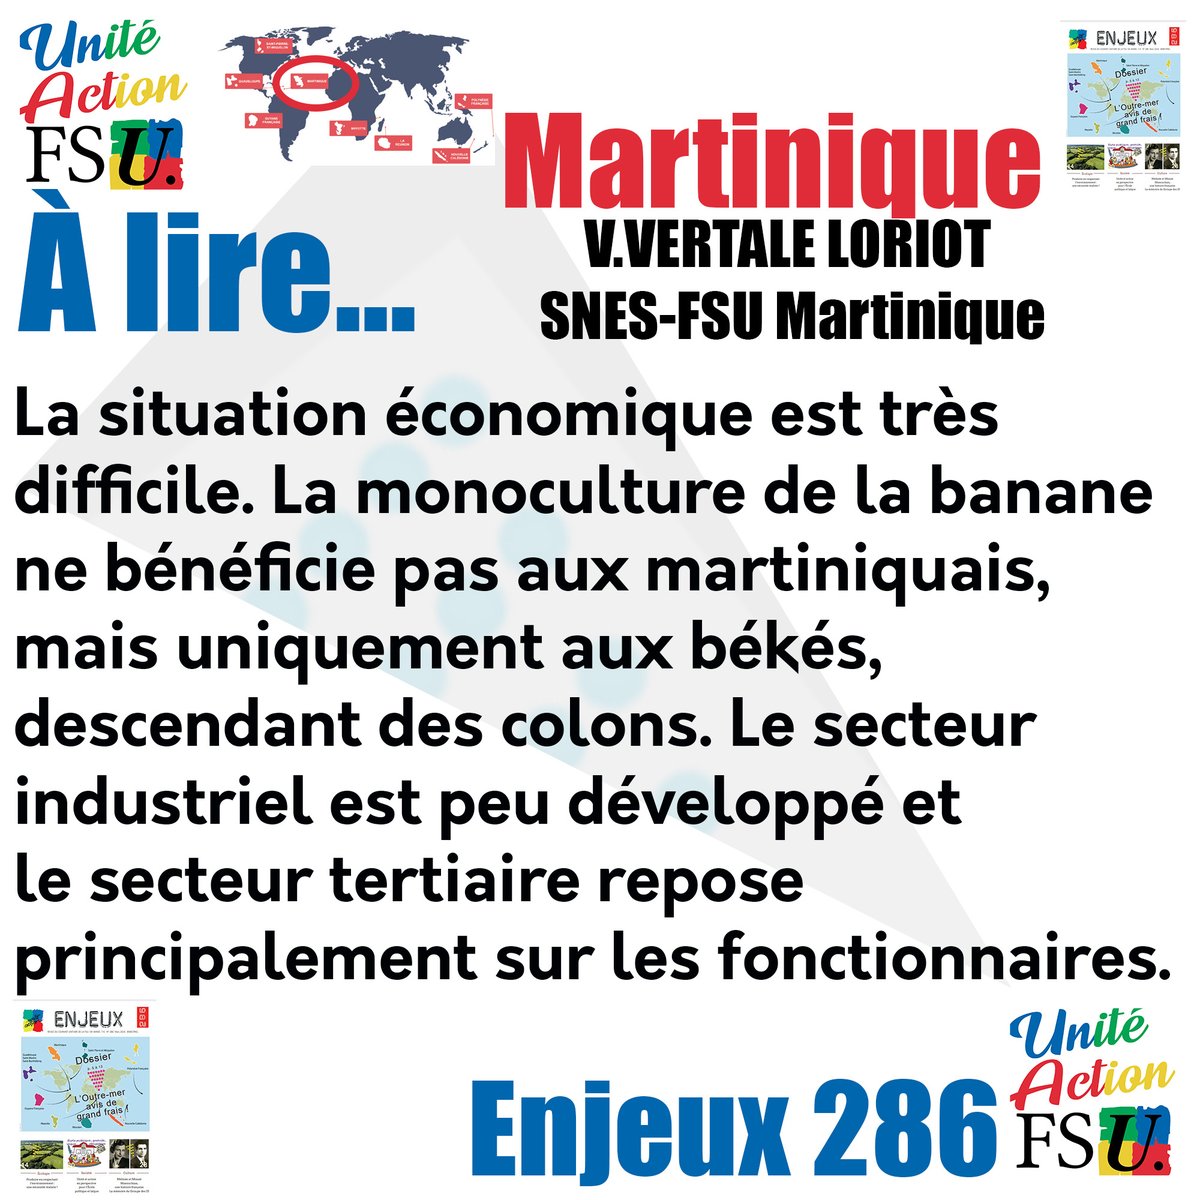 'La situation économique en #Martinique est très difficile. La monoculture de la #banane ne bénéficie pas aux martiniquais, mais uniquement aux békés, descendant des colons.' @ValerieVertale @snesmartinique 
Retrouvez la revue 'Enjeux' et abonnez-vous !
unite-action.fr/sabonner-a-enj…